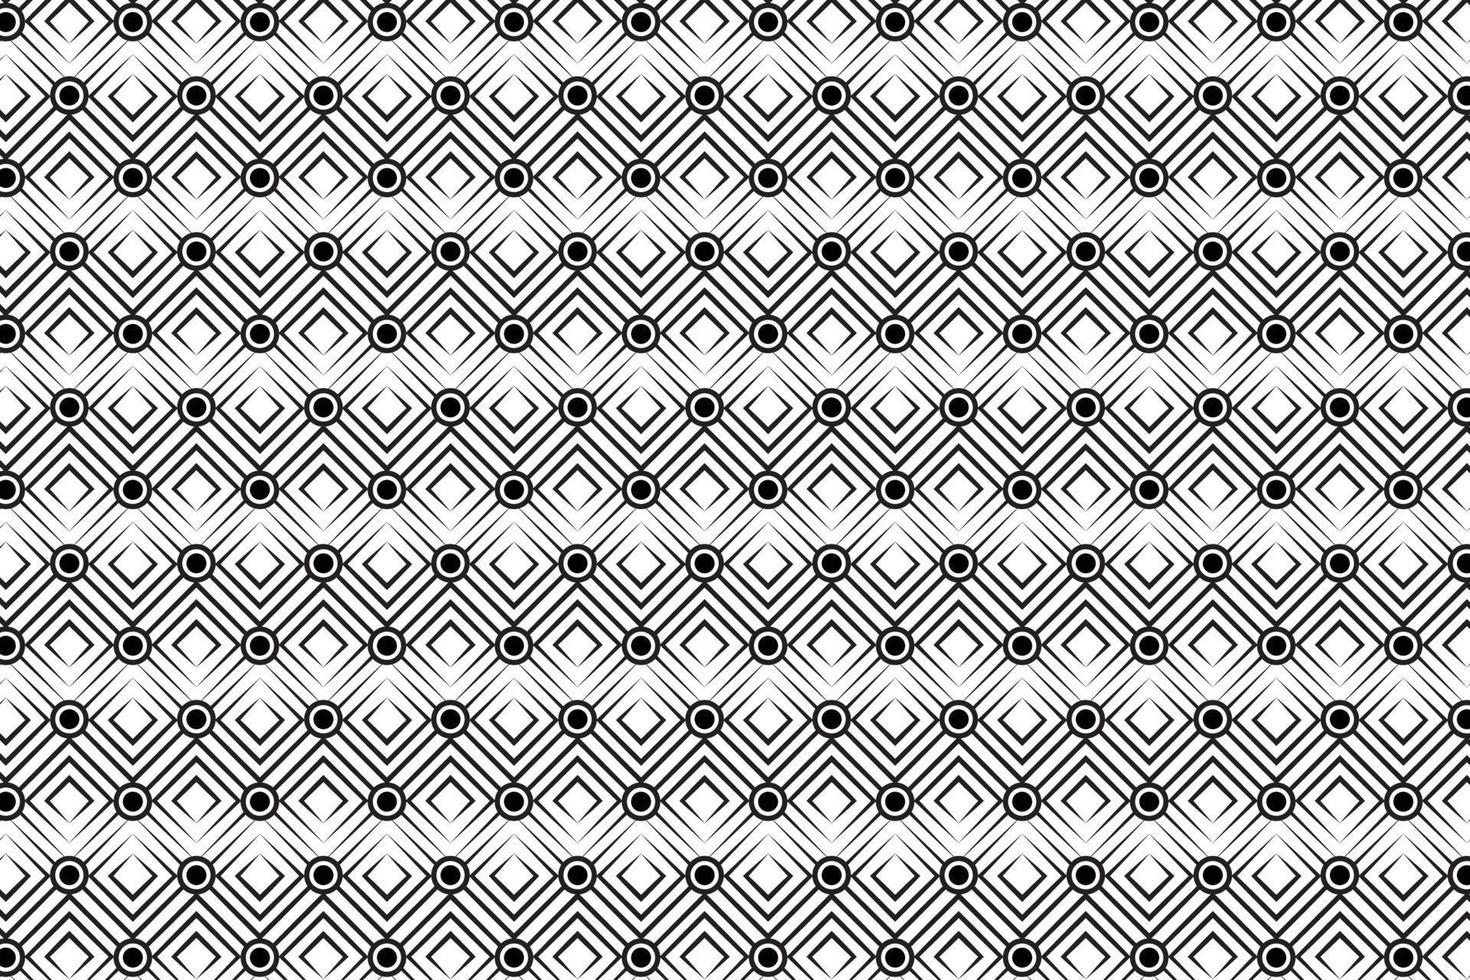 schwarzes abstraktes geometrisches Muster, schwarzer Quadrat- und Kreismusterhintergrund, Vektorlinienmuster auf weißem Hintergrund vektor